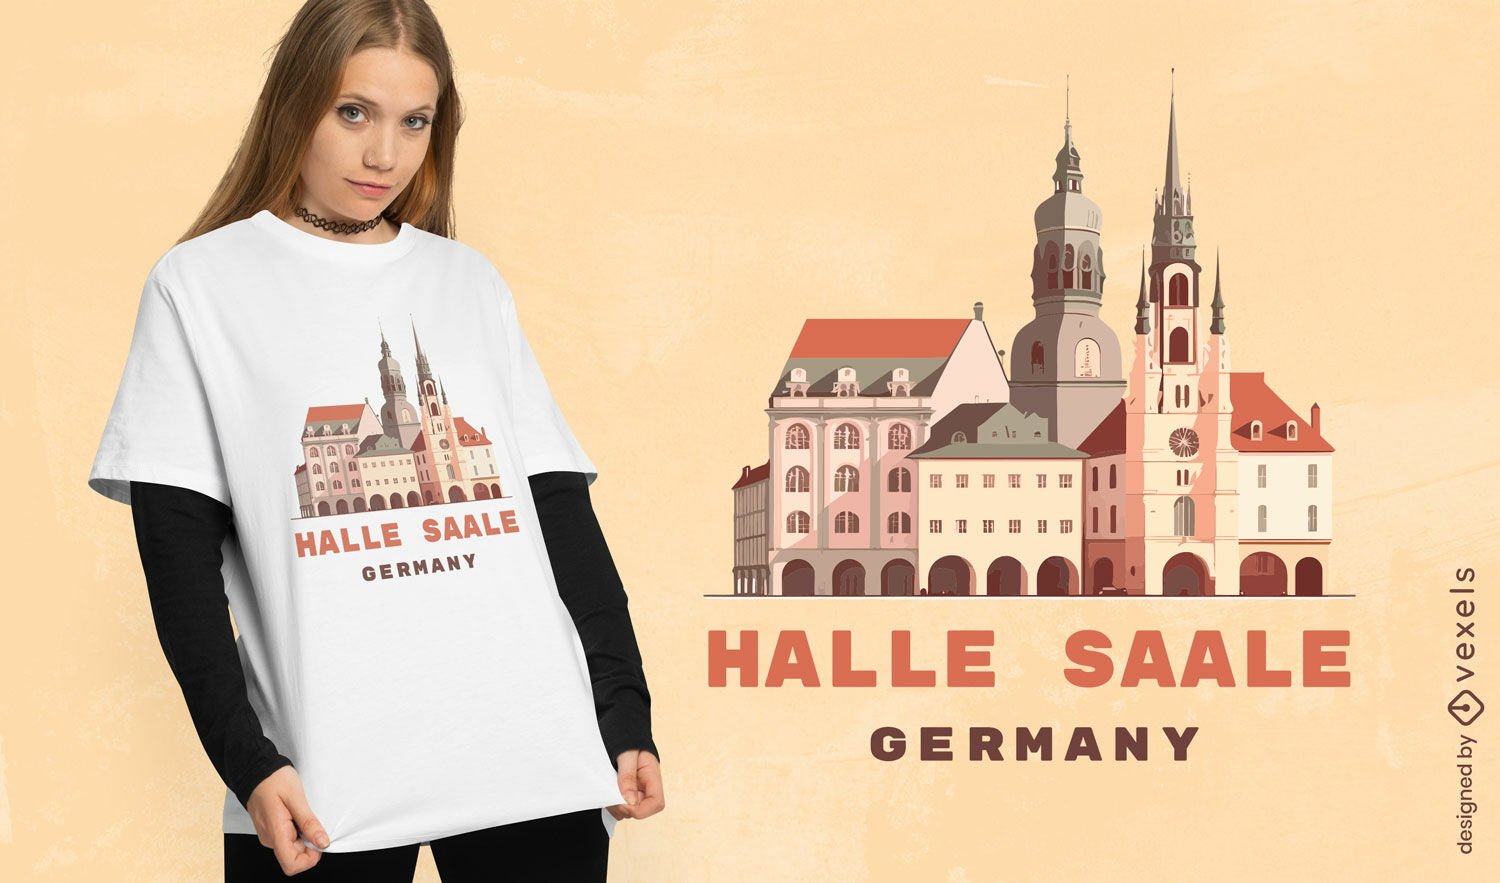 Dise?o de camiseta realista de la ciudad alemana de halle